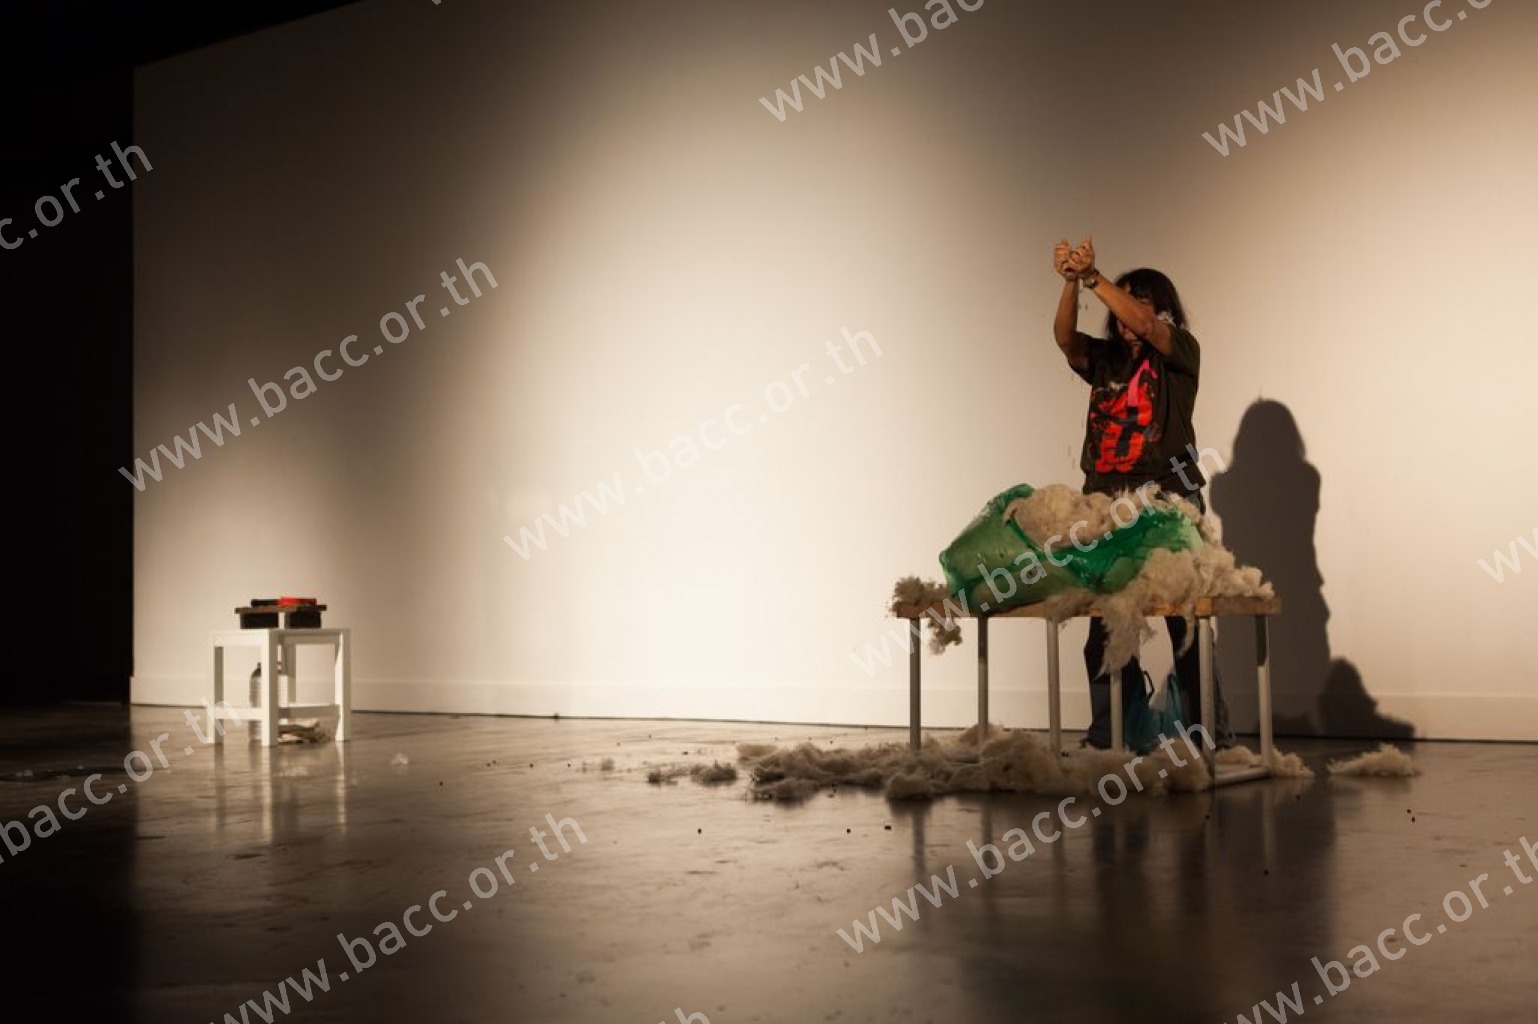 การแสดงภายใต้เทศกาลศิลปะการแสดง ครั้งที่ 4 : Asiatopia International Performance Art Festival